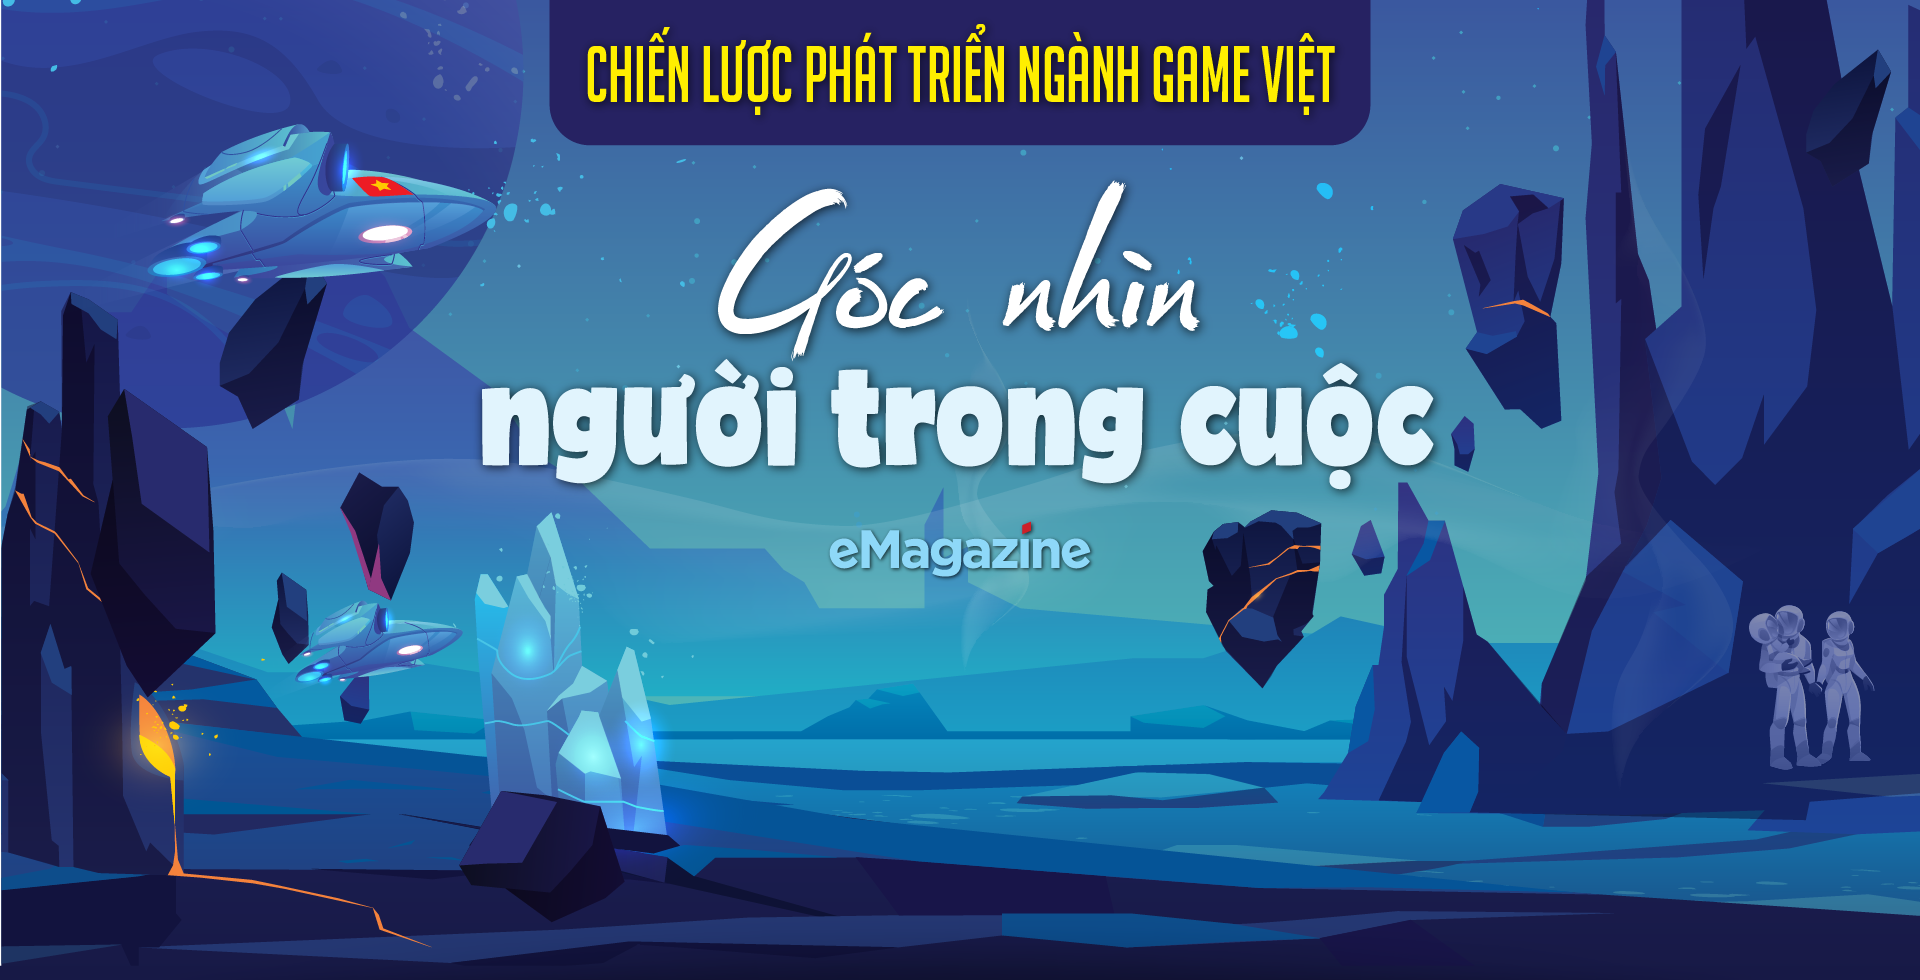 Chiến lược phát triển ngành game Việt: Góc nhìn người trong cuộc - Ảnh 1